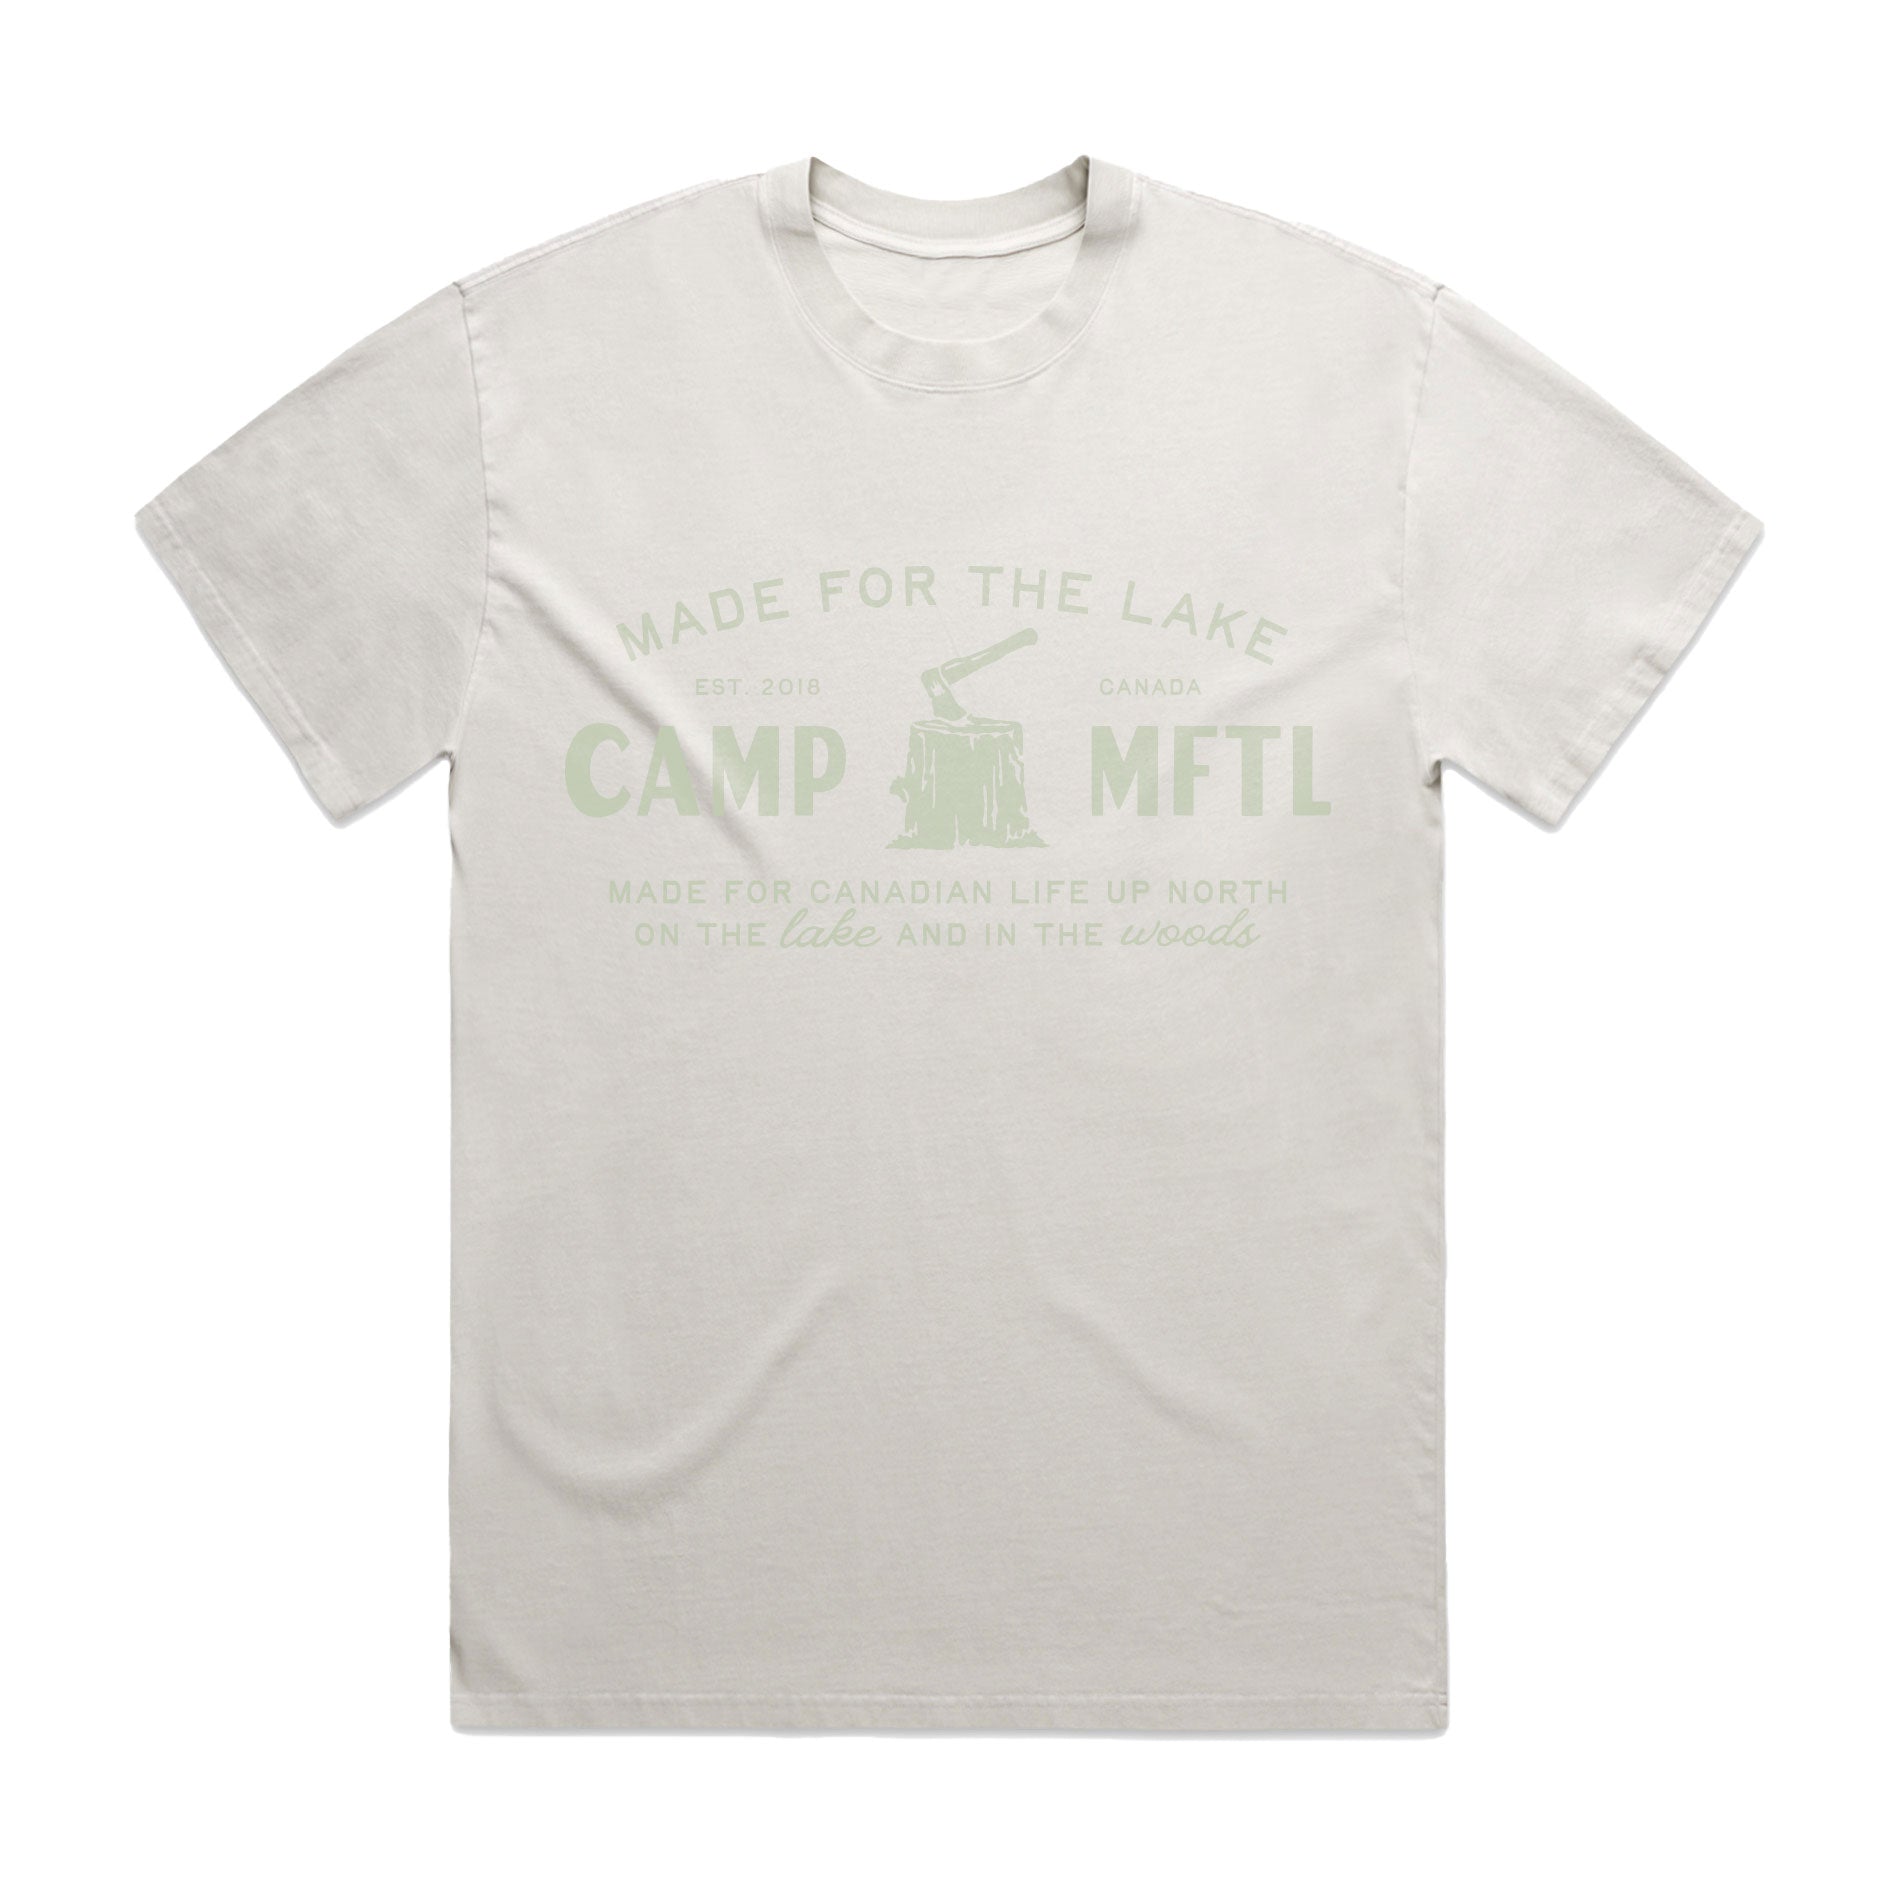 CAMP MFTL T-shirt